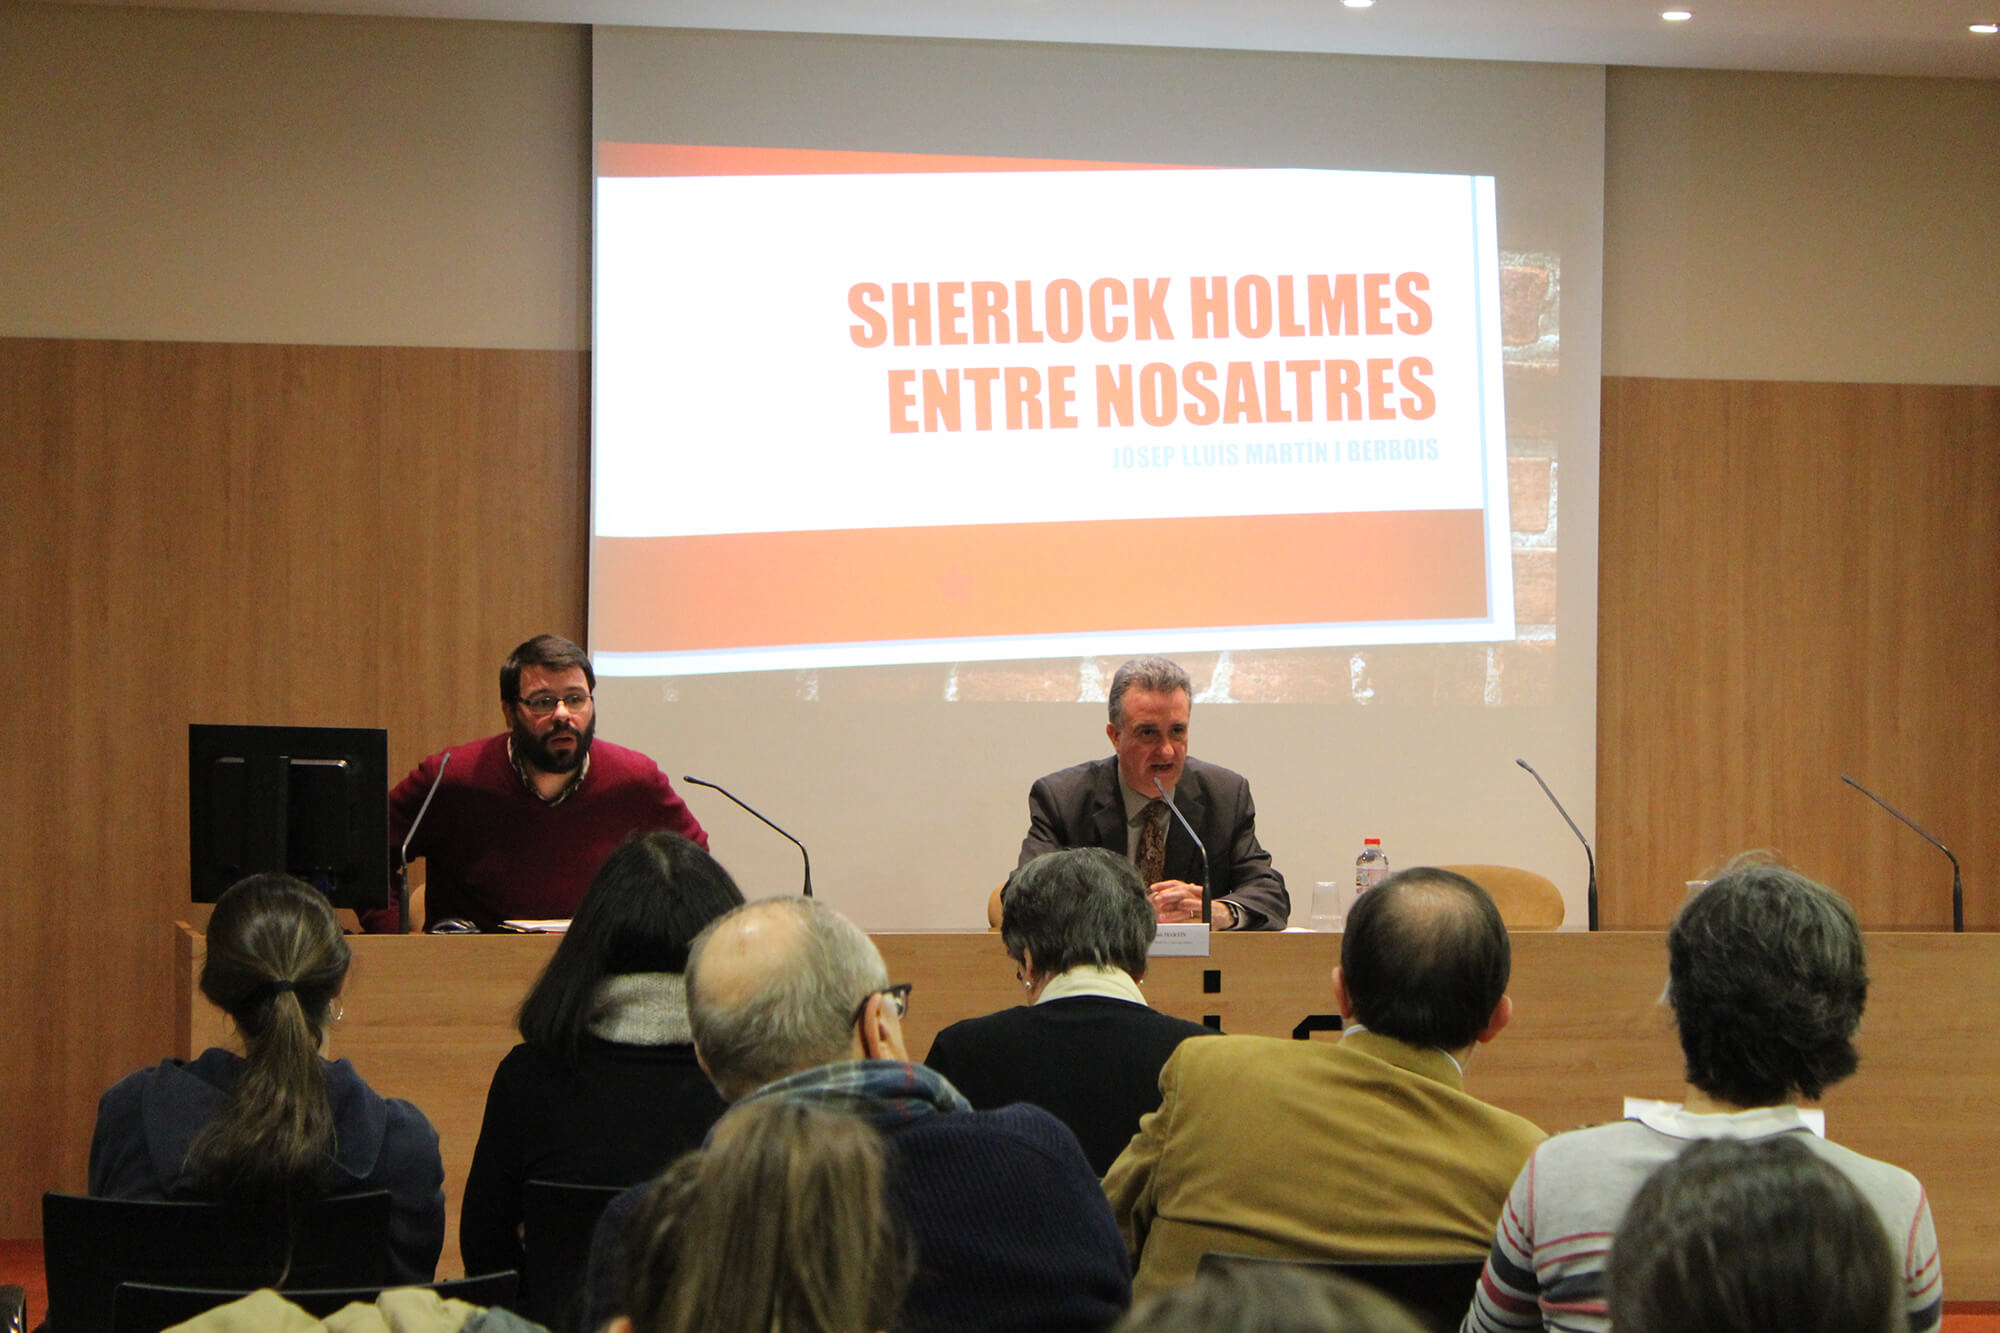 Jordi Puigdomènech, a lecturer at UIC Barcelona. Talk: “La influència del cinema en la narrativa de Carlos Pujol: adaptacions de Sherlock Holmes”. UIC Barcelona, 30 January, 2019.